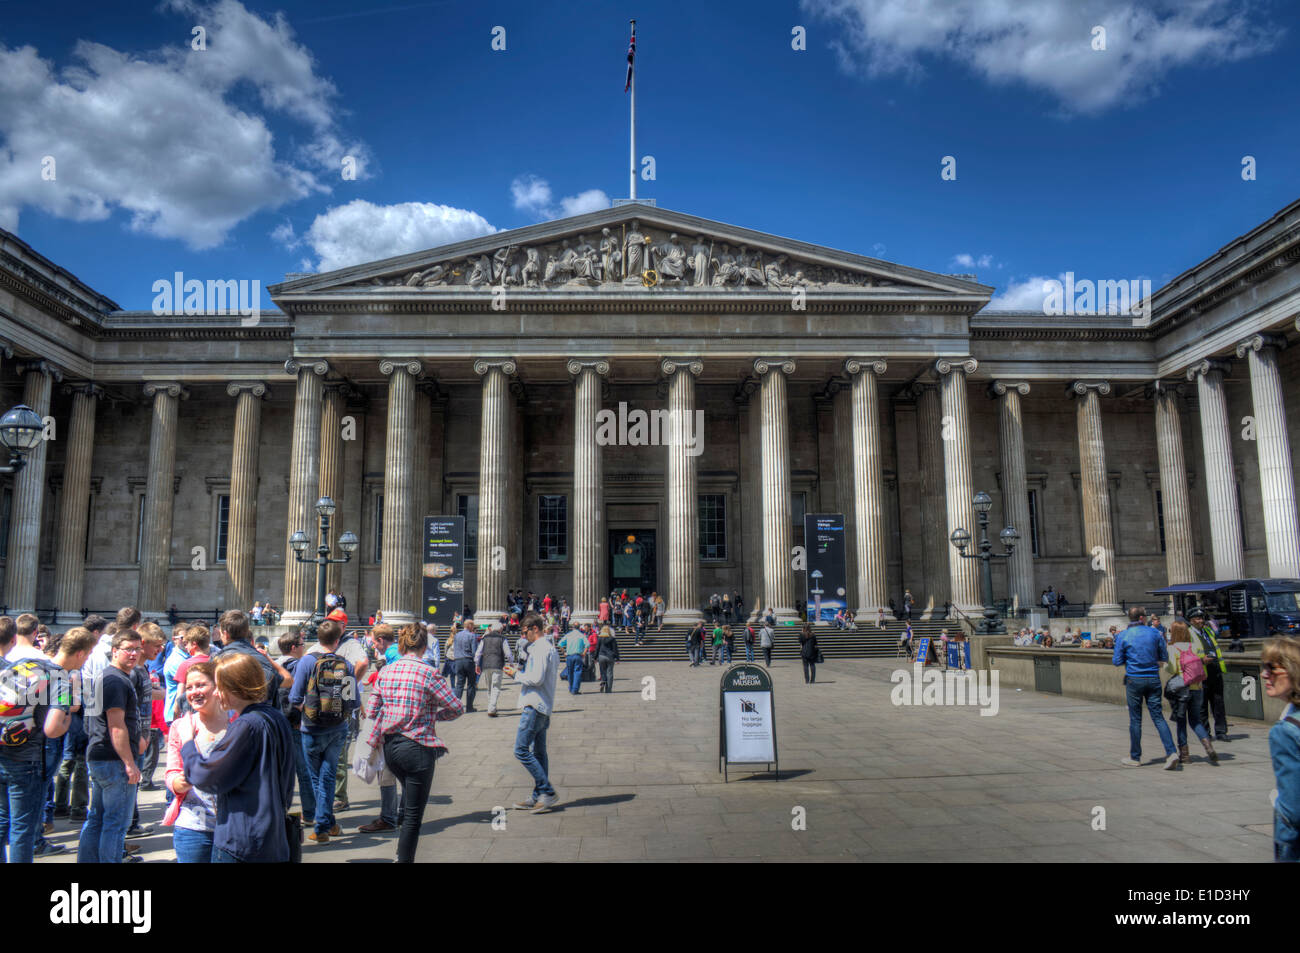 Immagine hdr di turisti la raccolta al di fuori dell'entrata al British Museum di Londra, Inghilterra Foto Stock